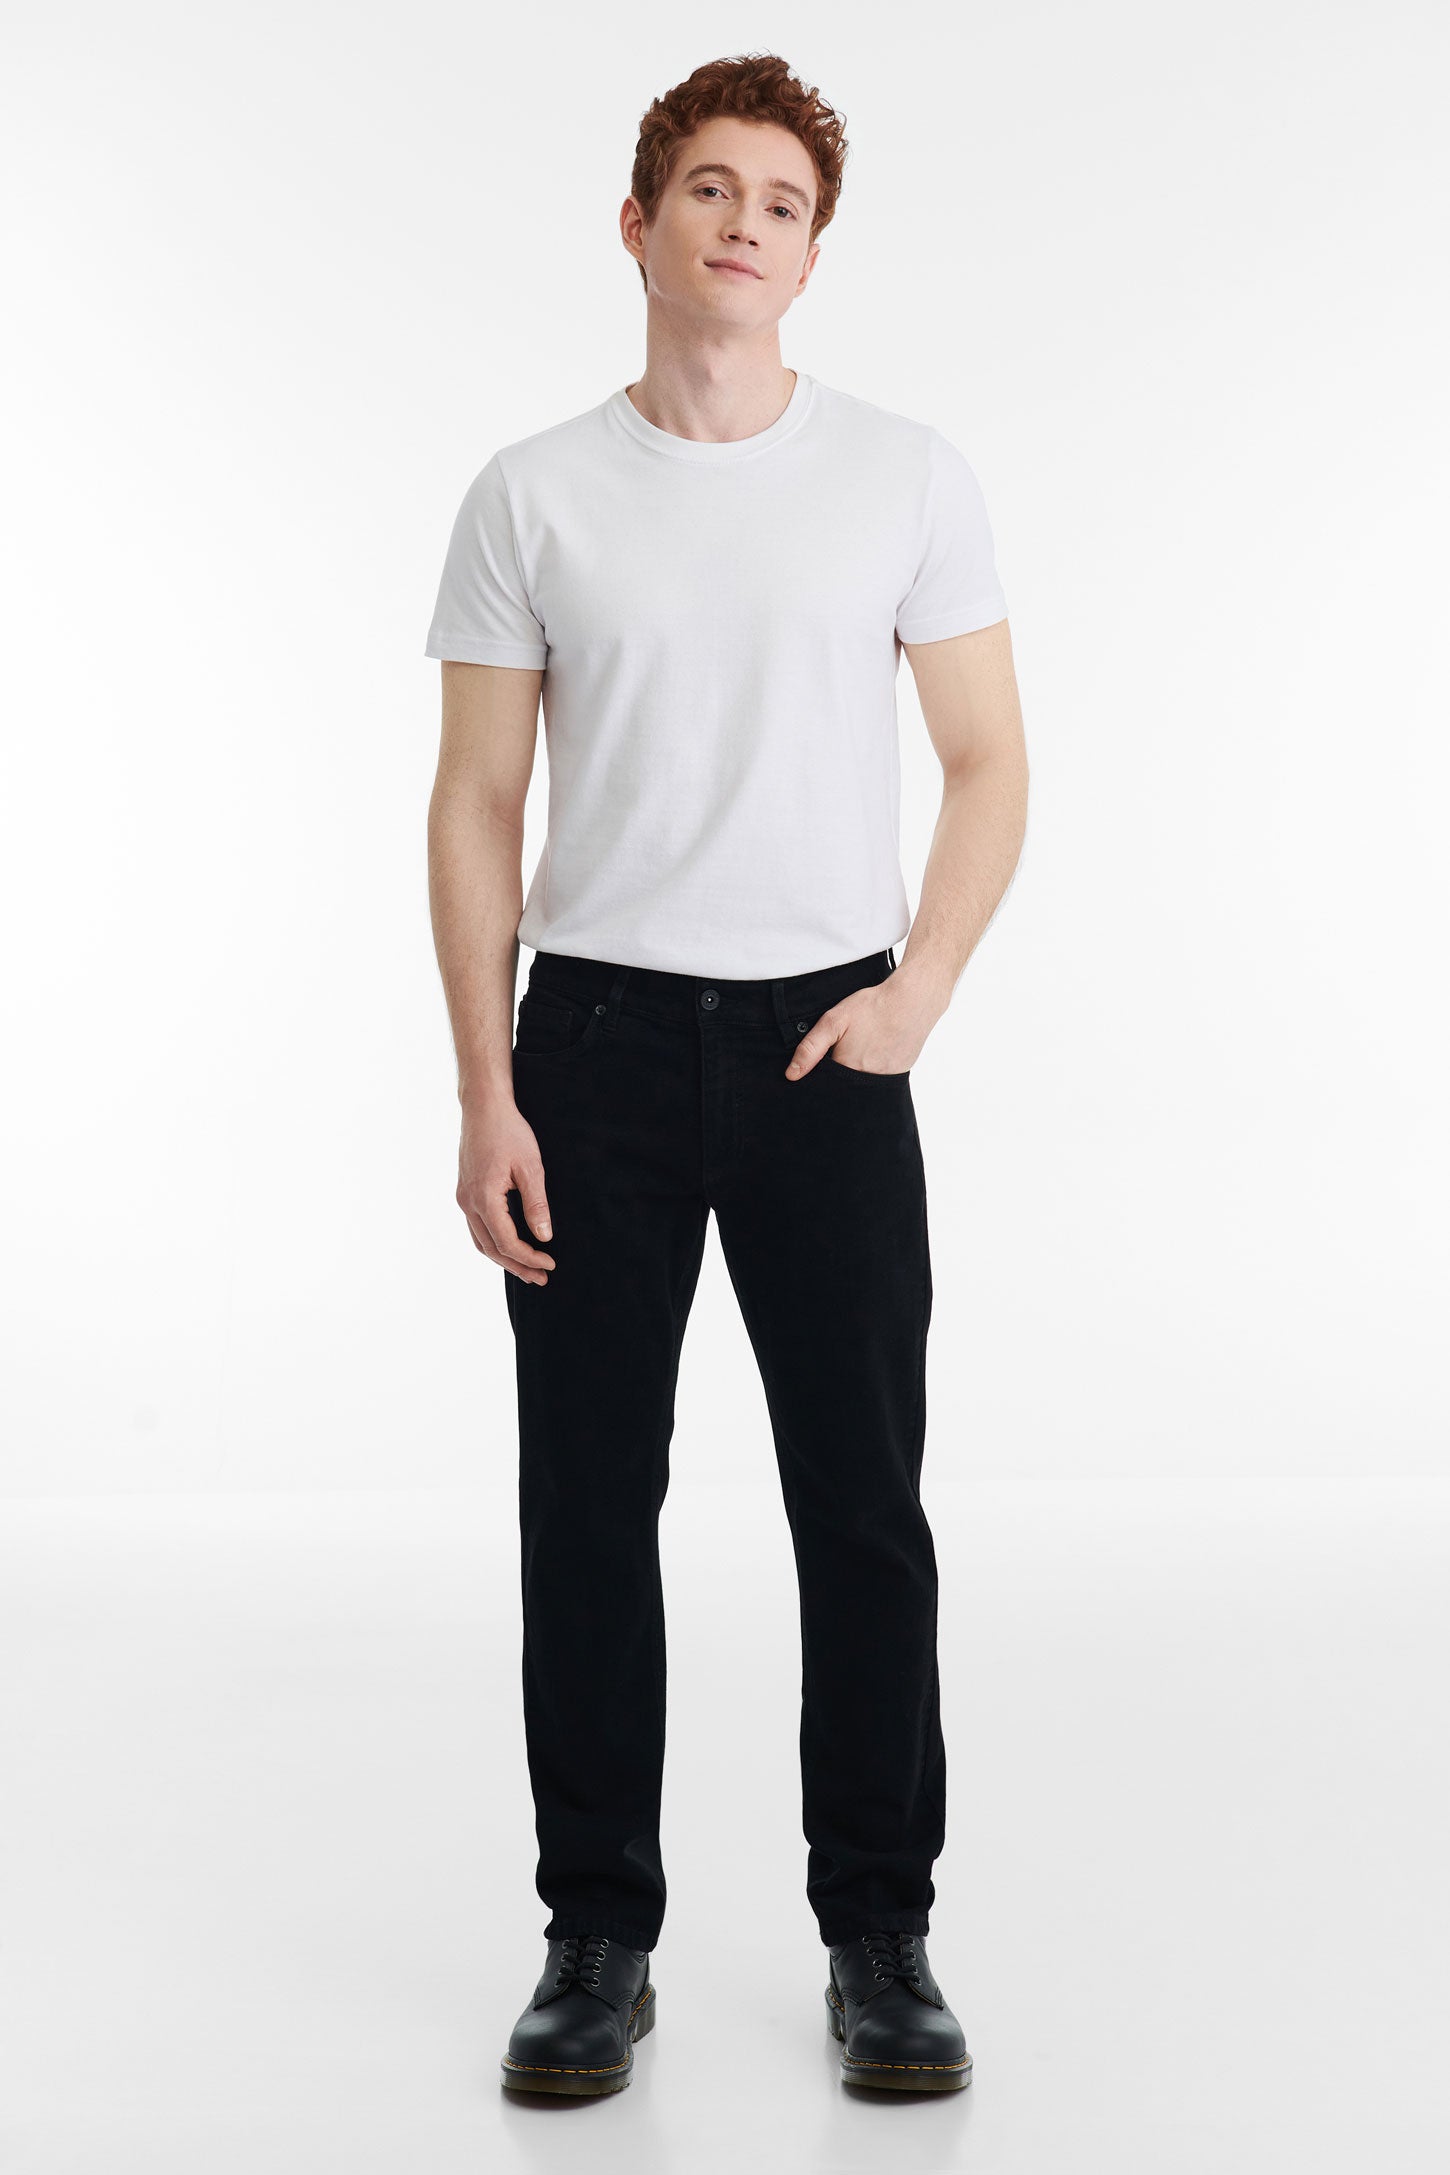 Jeans 5 poches coupe régulière 30'' - Homme && NOIR